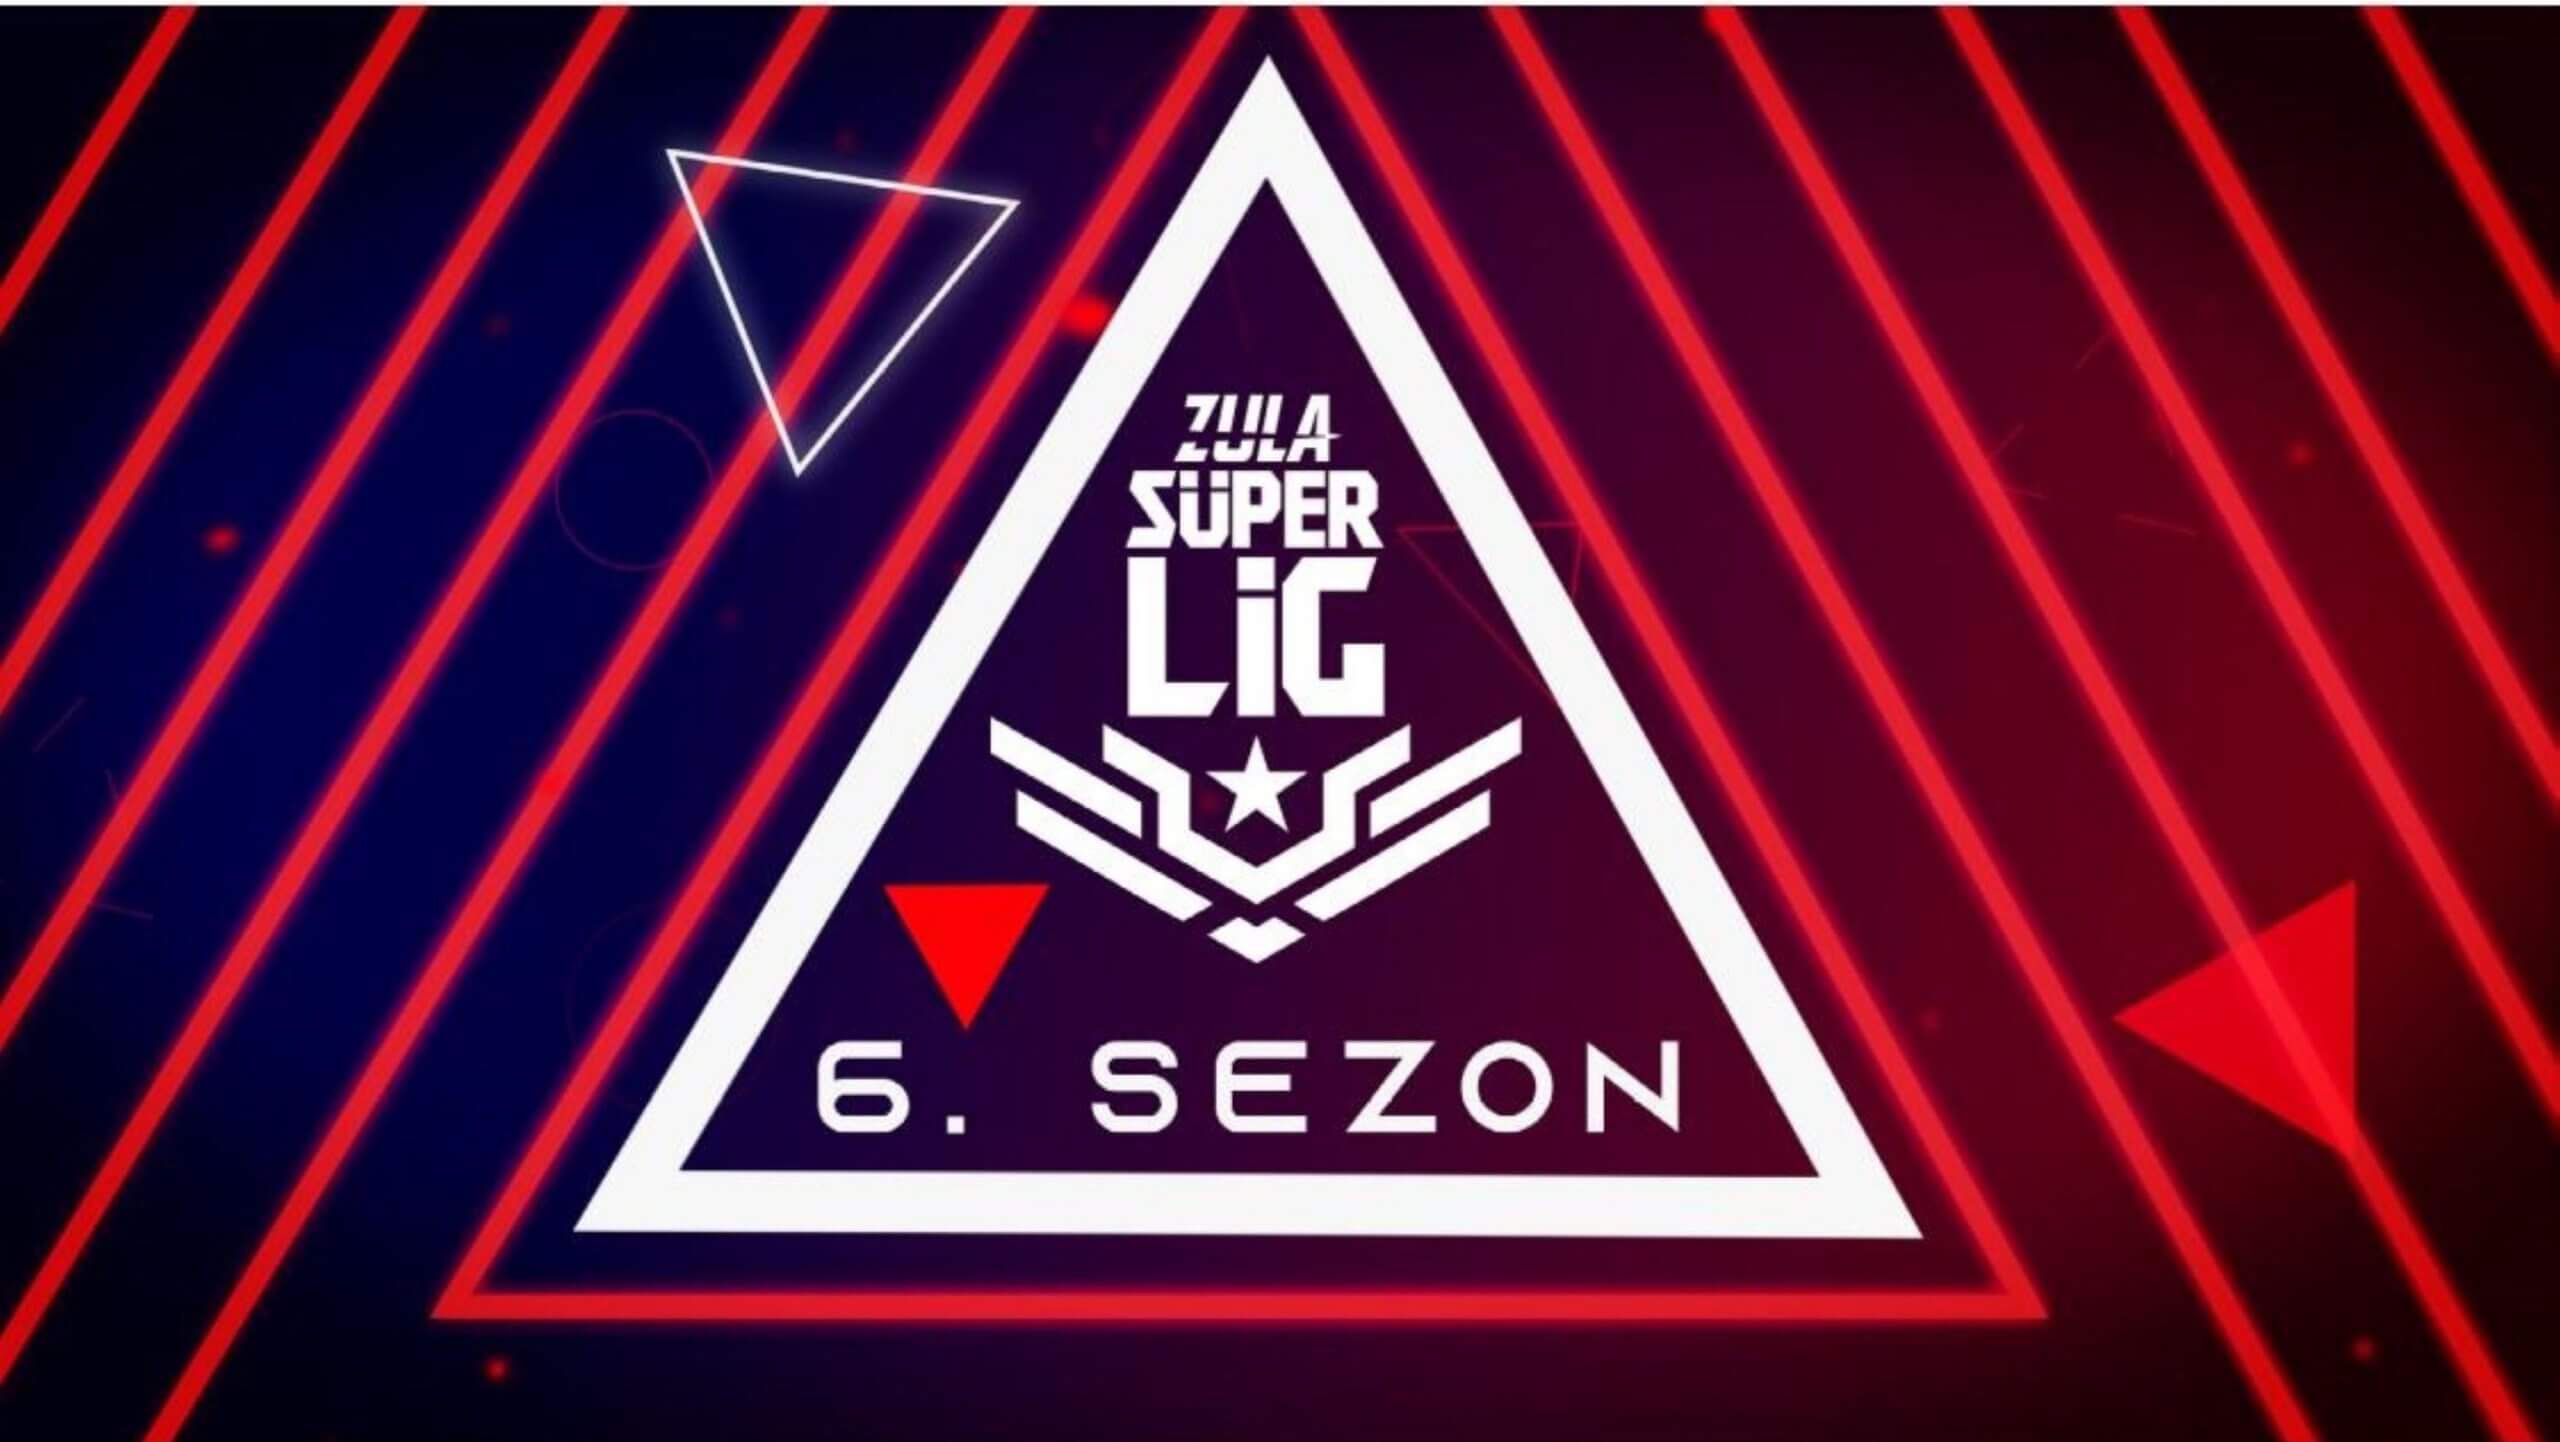 Zula Süper Lig 6. Sezon 4. Hafta karşılaşmaları belli oldu